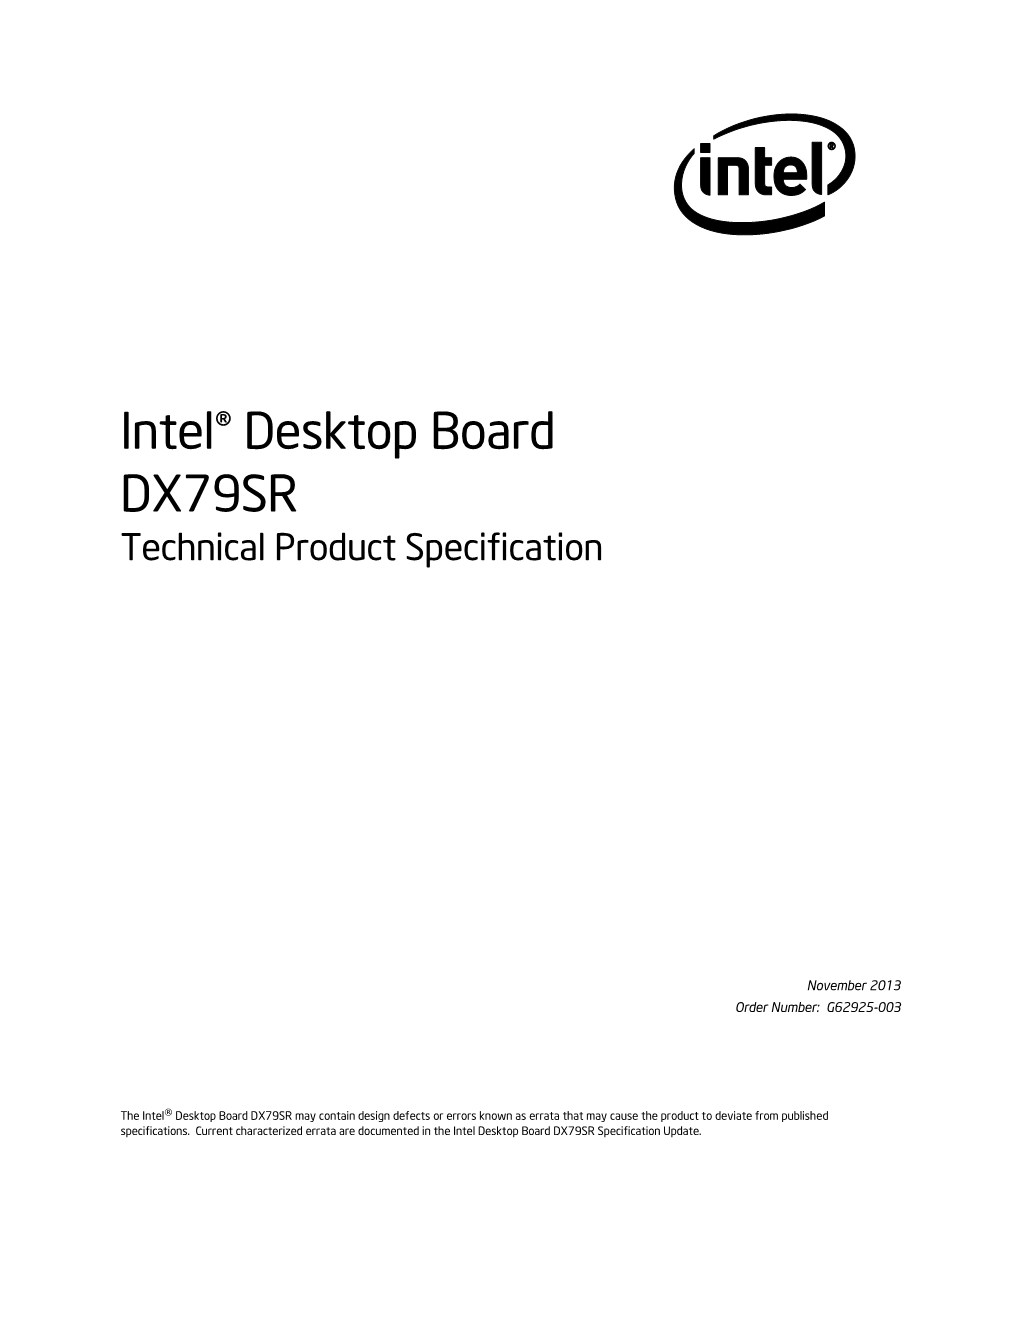 Intel® Desktop Board DX79SR Technical Product Specification